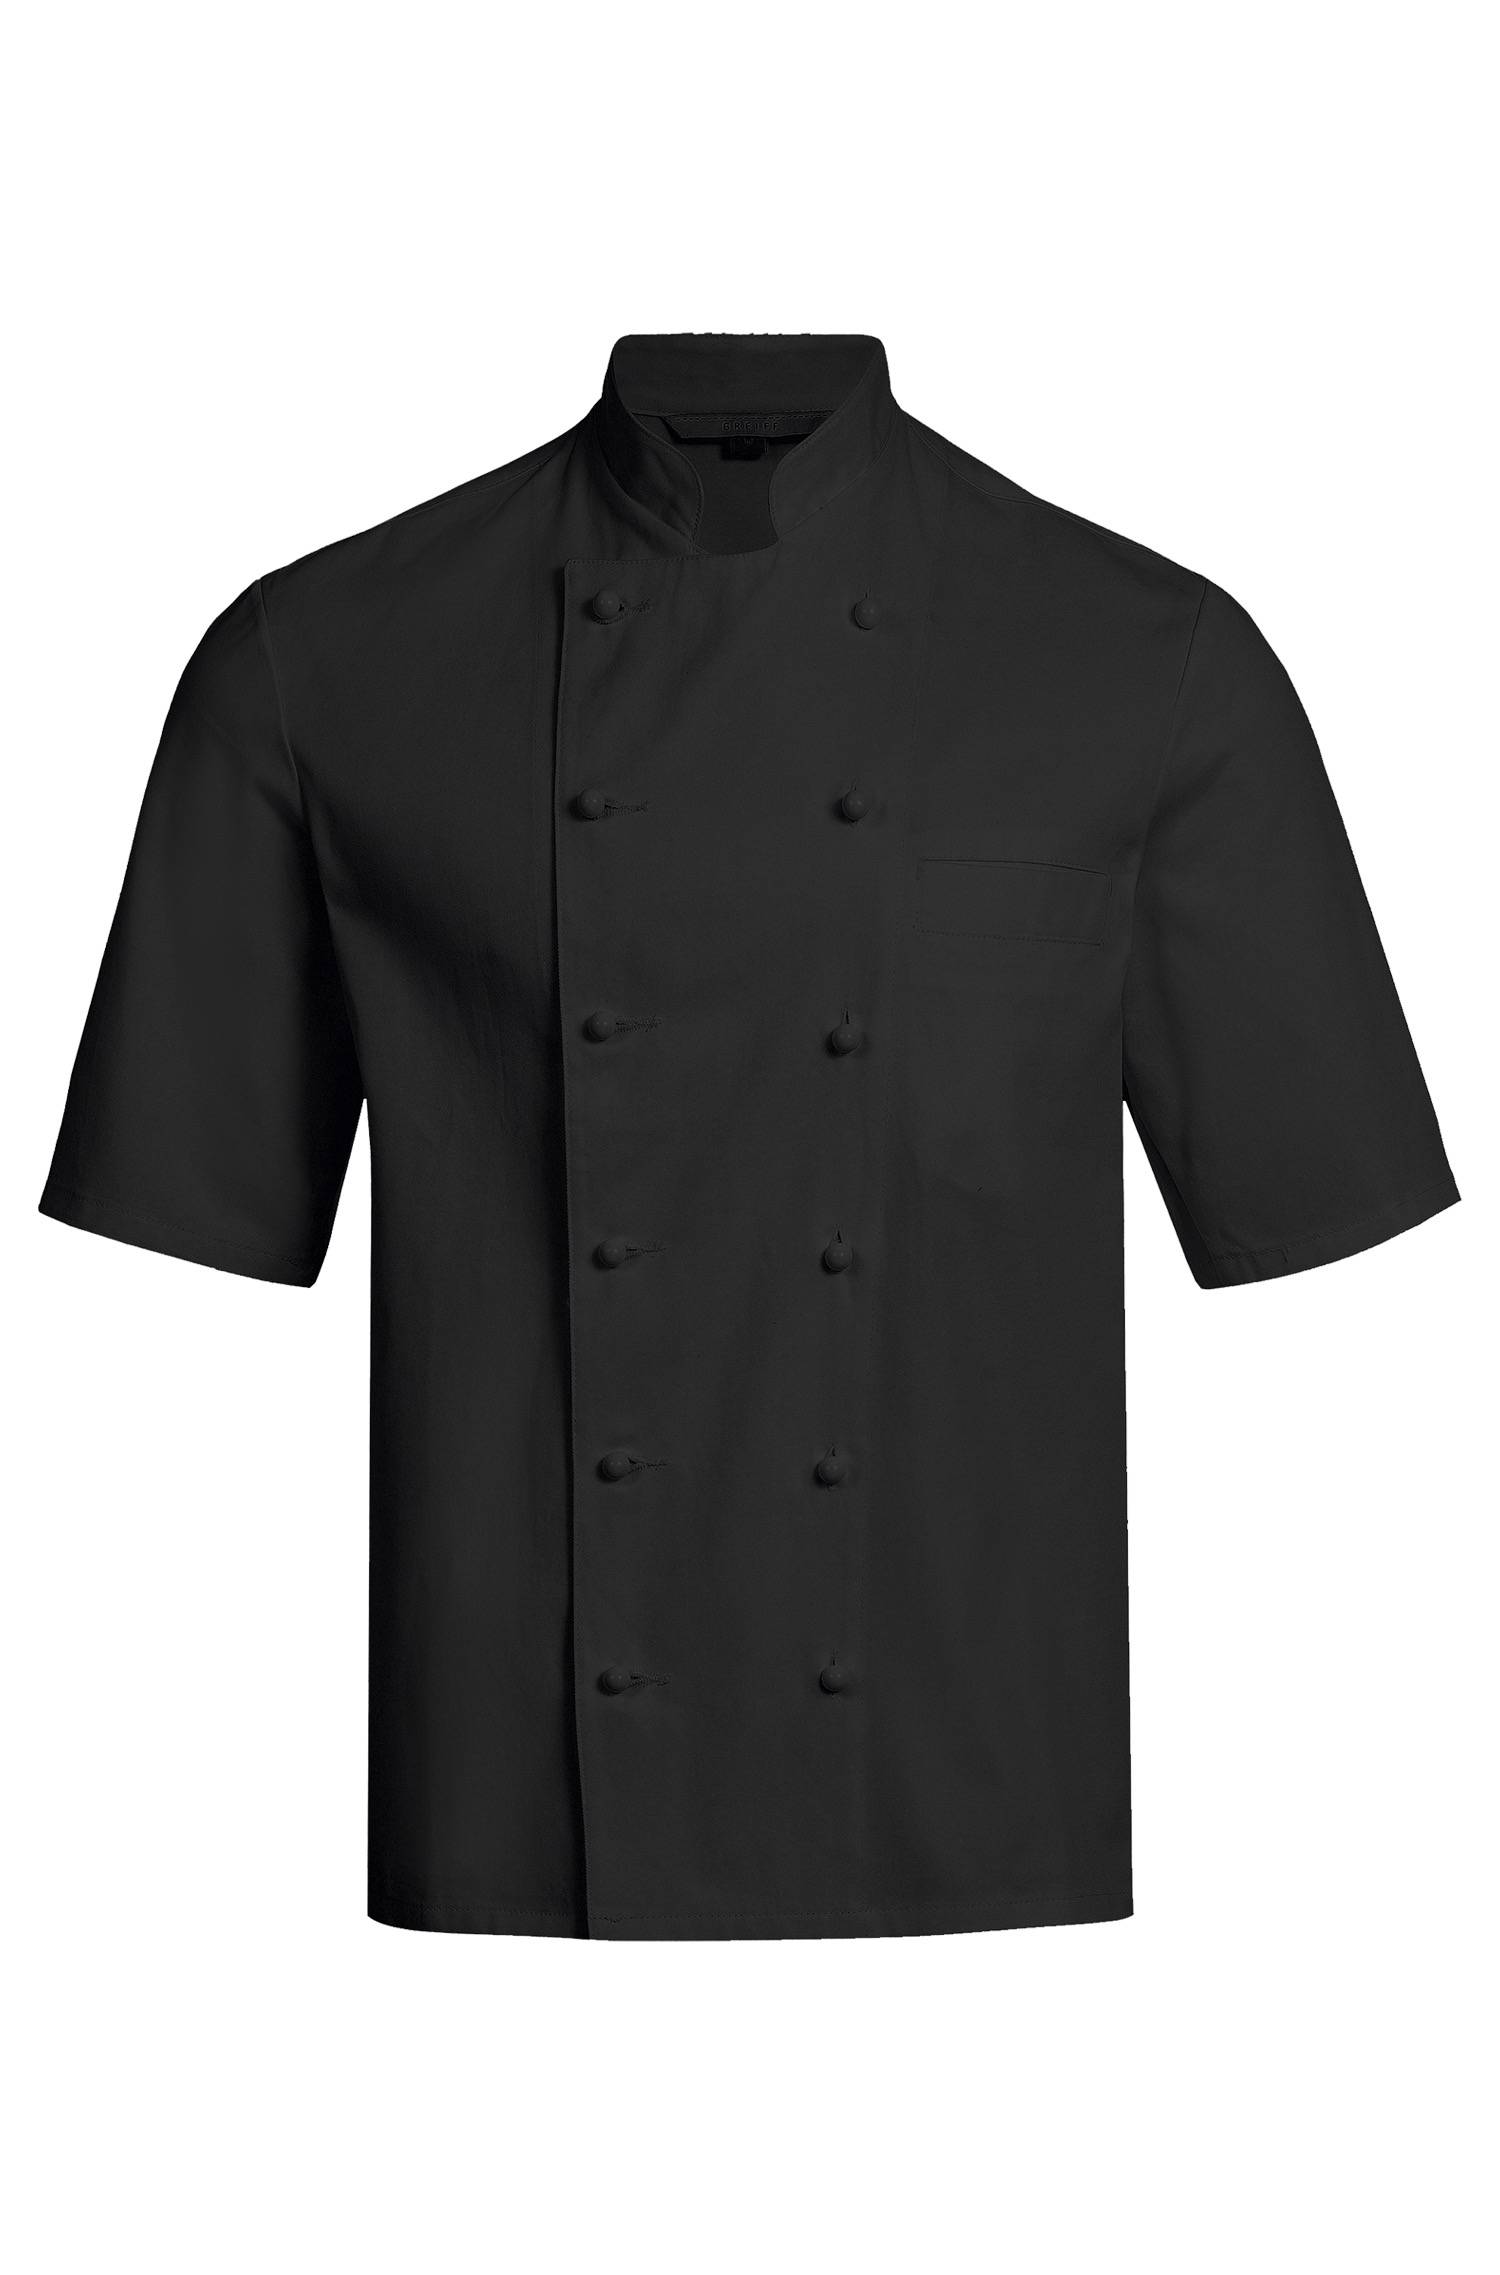 Noir veste de cuisine homme avec manches courtes et double boutonnage regular fit